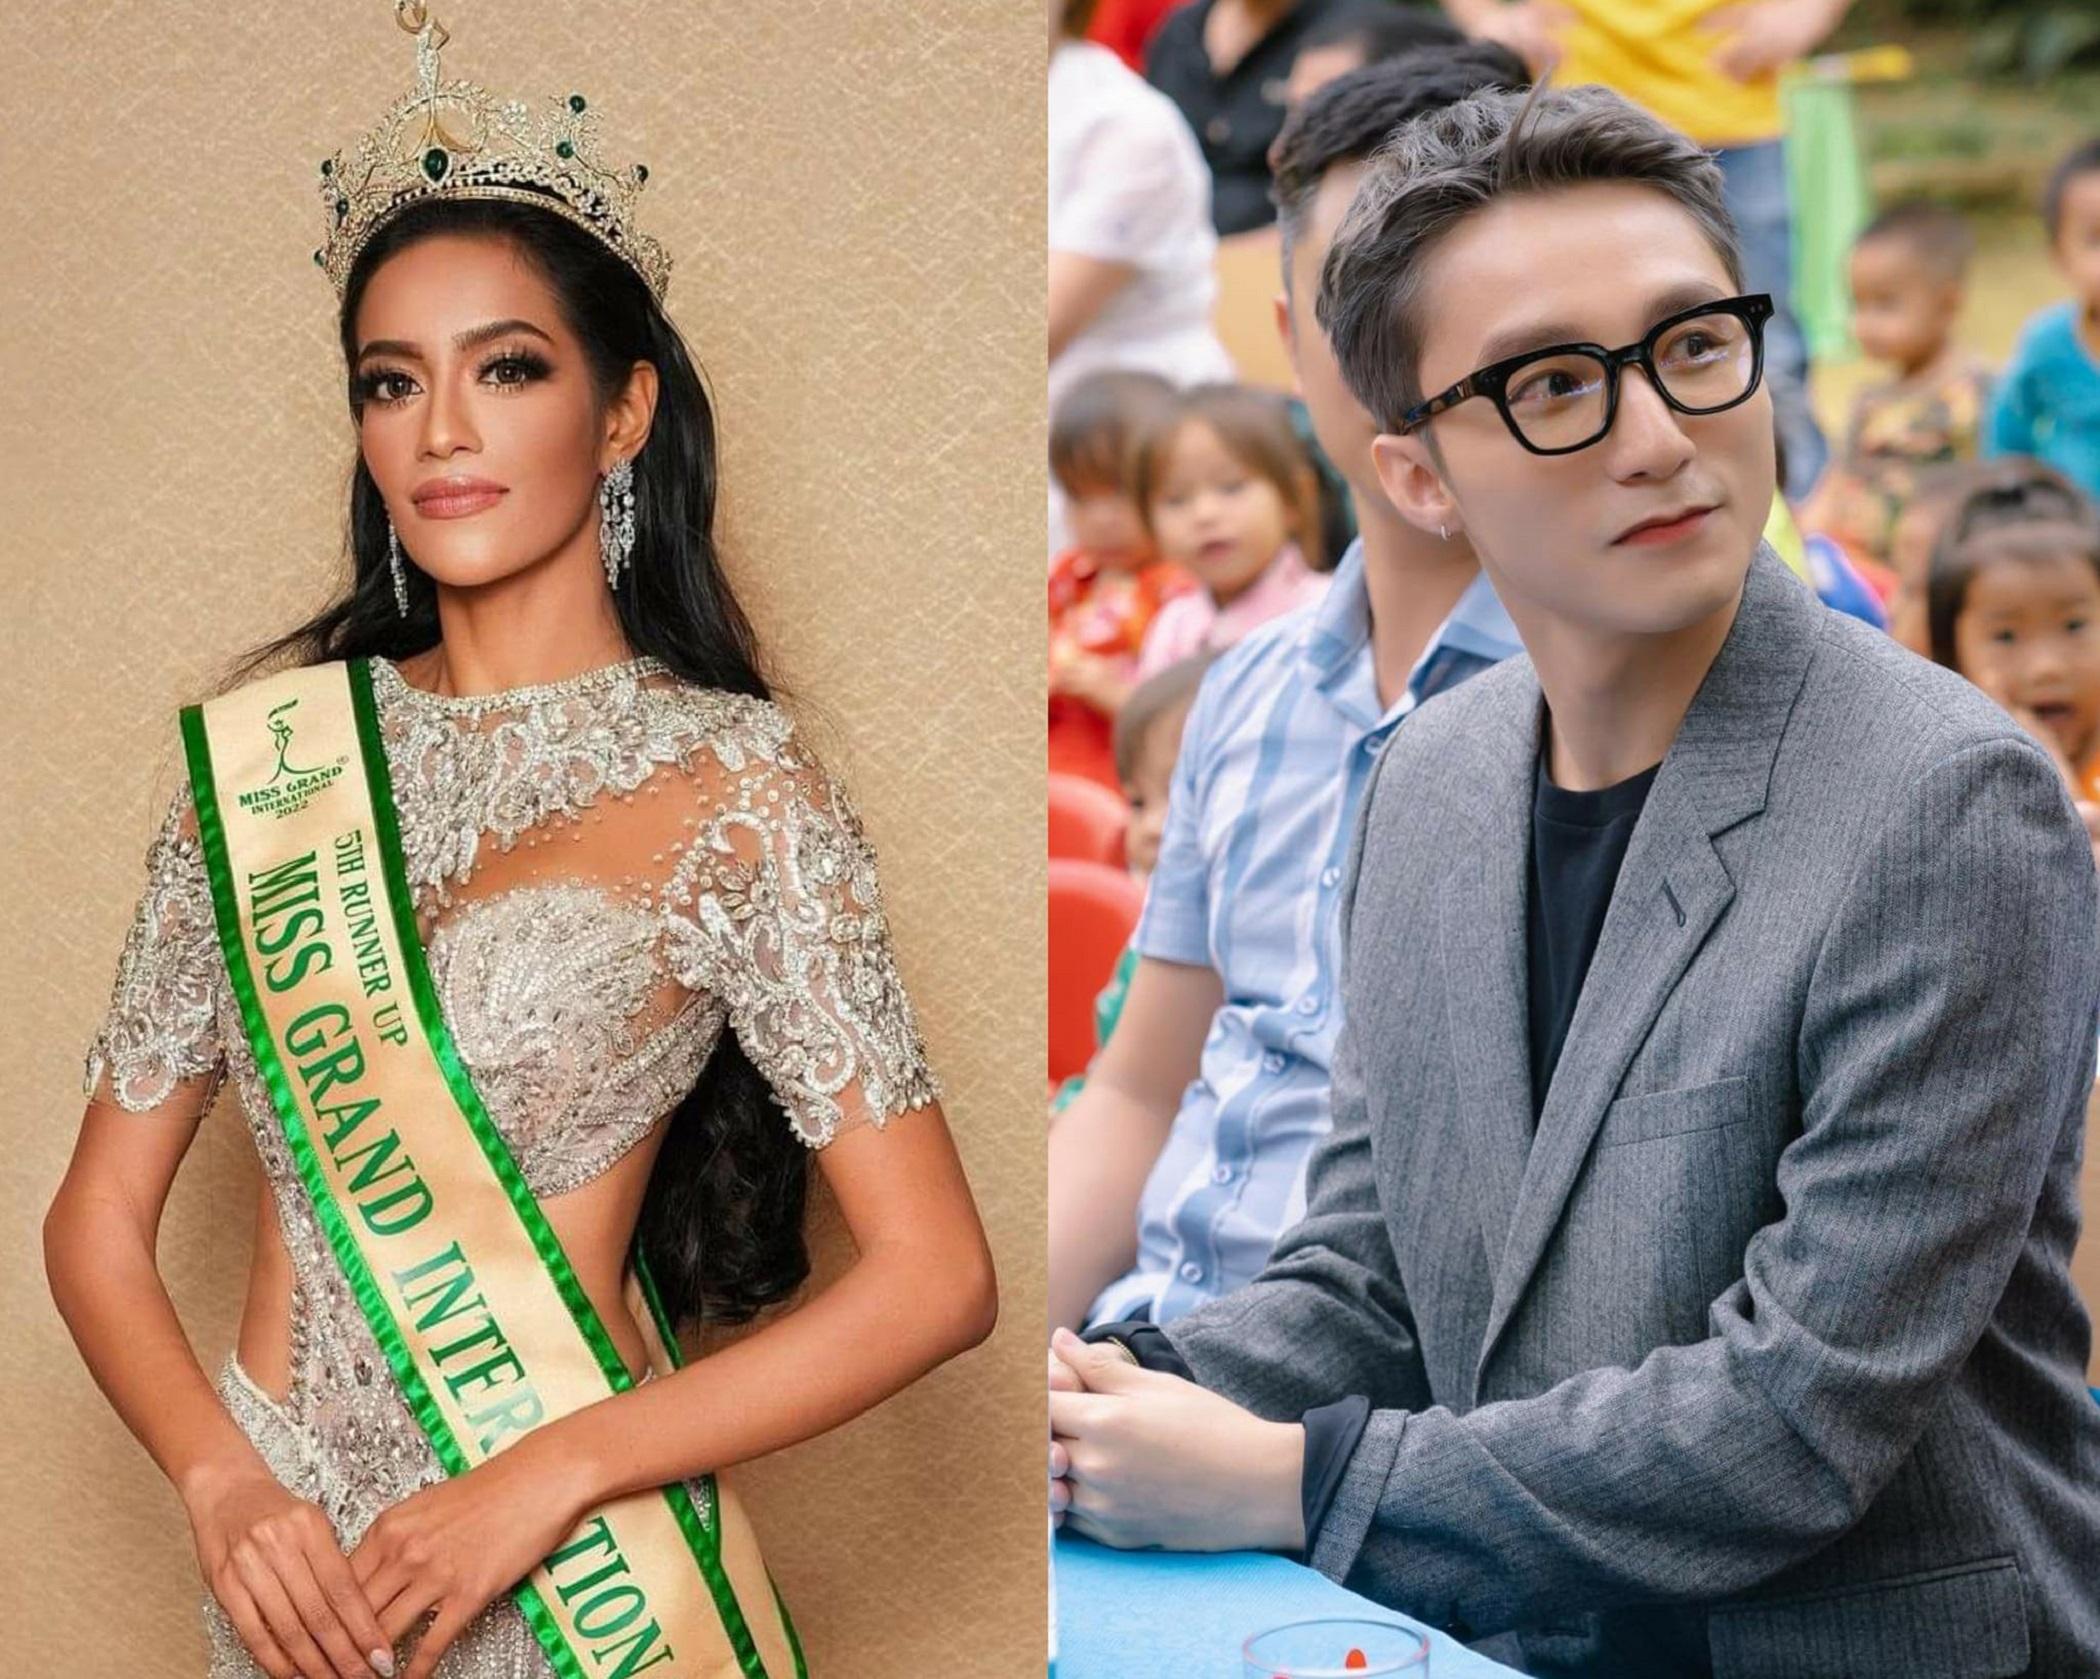 Á hậu 5 Miss Grand 2022 tung bằng chứng bị ép bỏ danh hiệu, Sơn Tùng M-TP bất ngờ đi xây trường học ở vùng cao